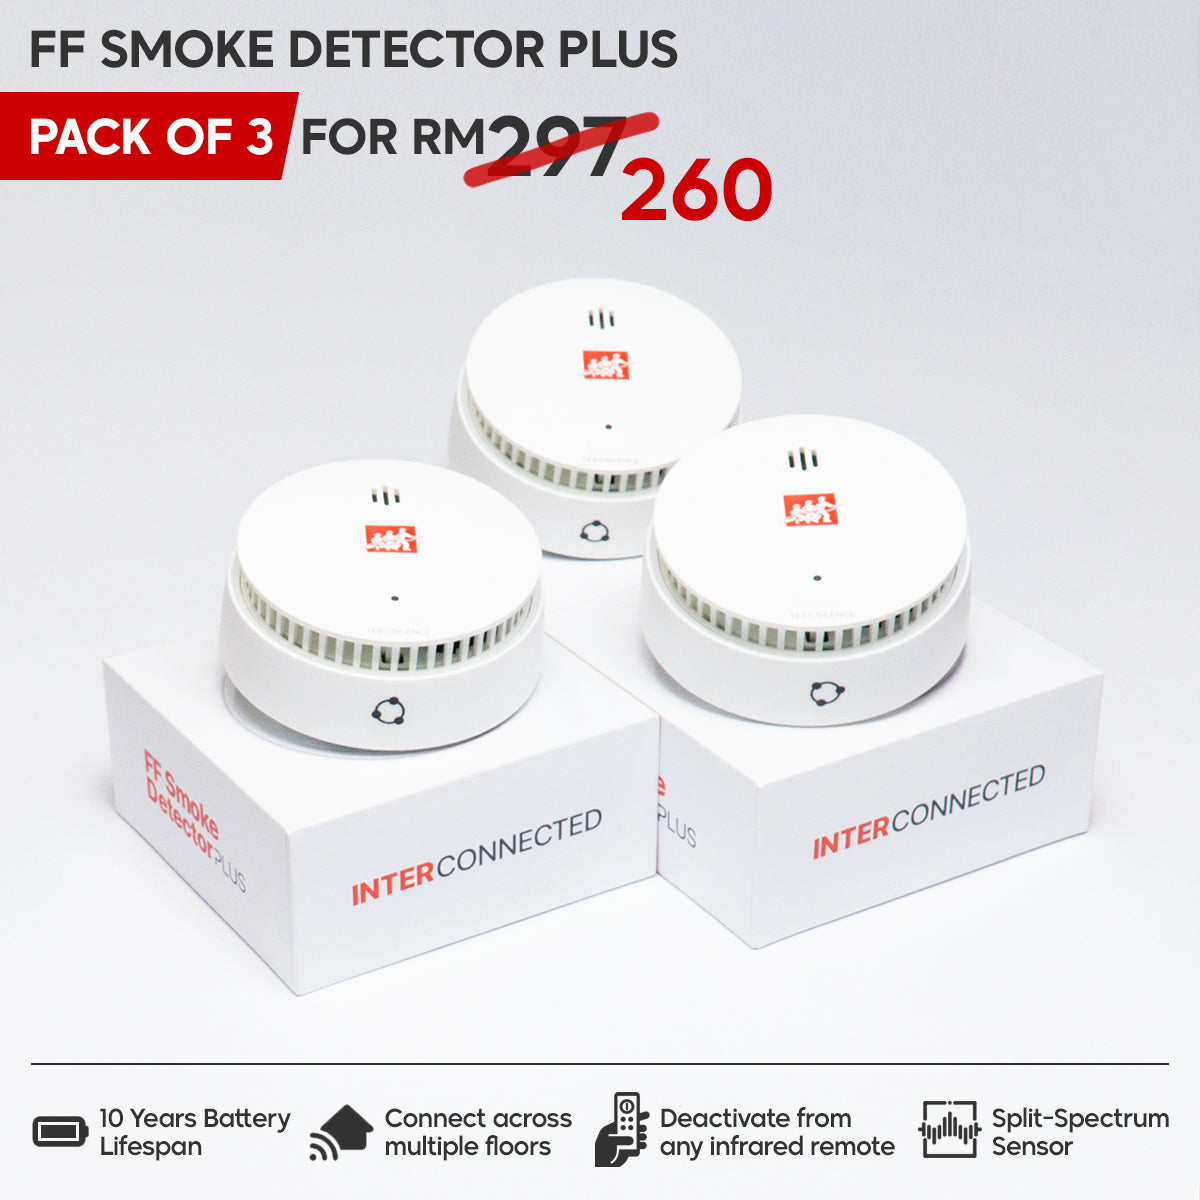 FF Smoke Detector PLUS